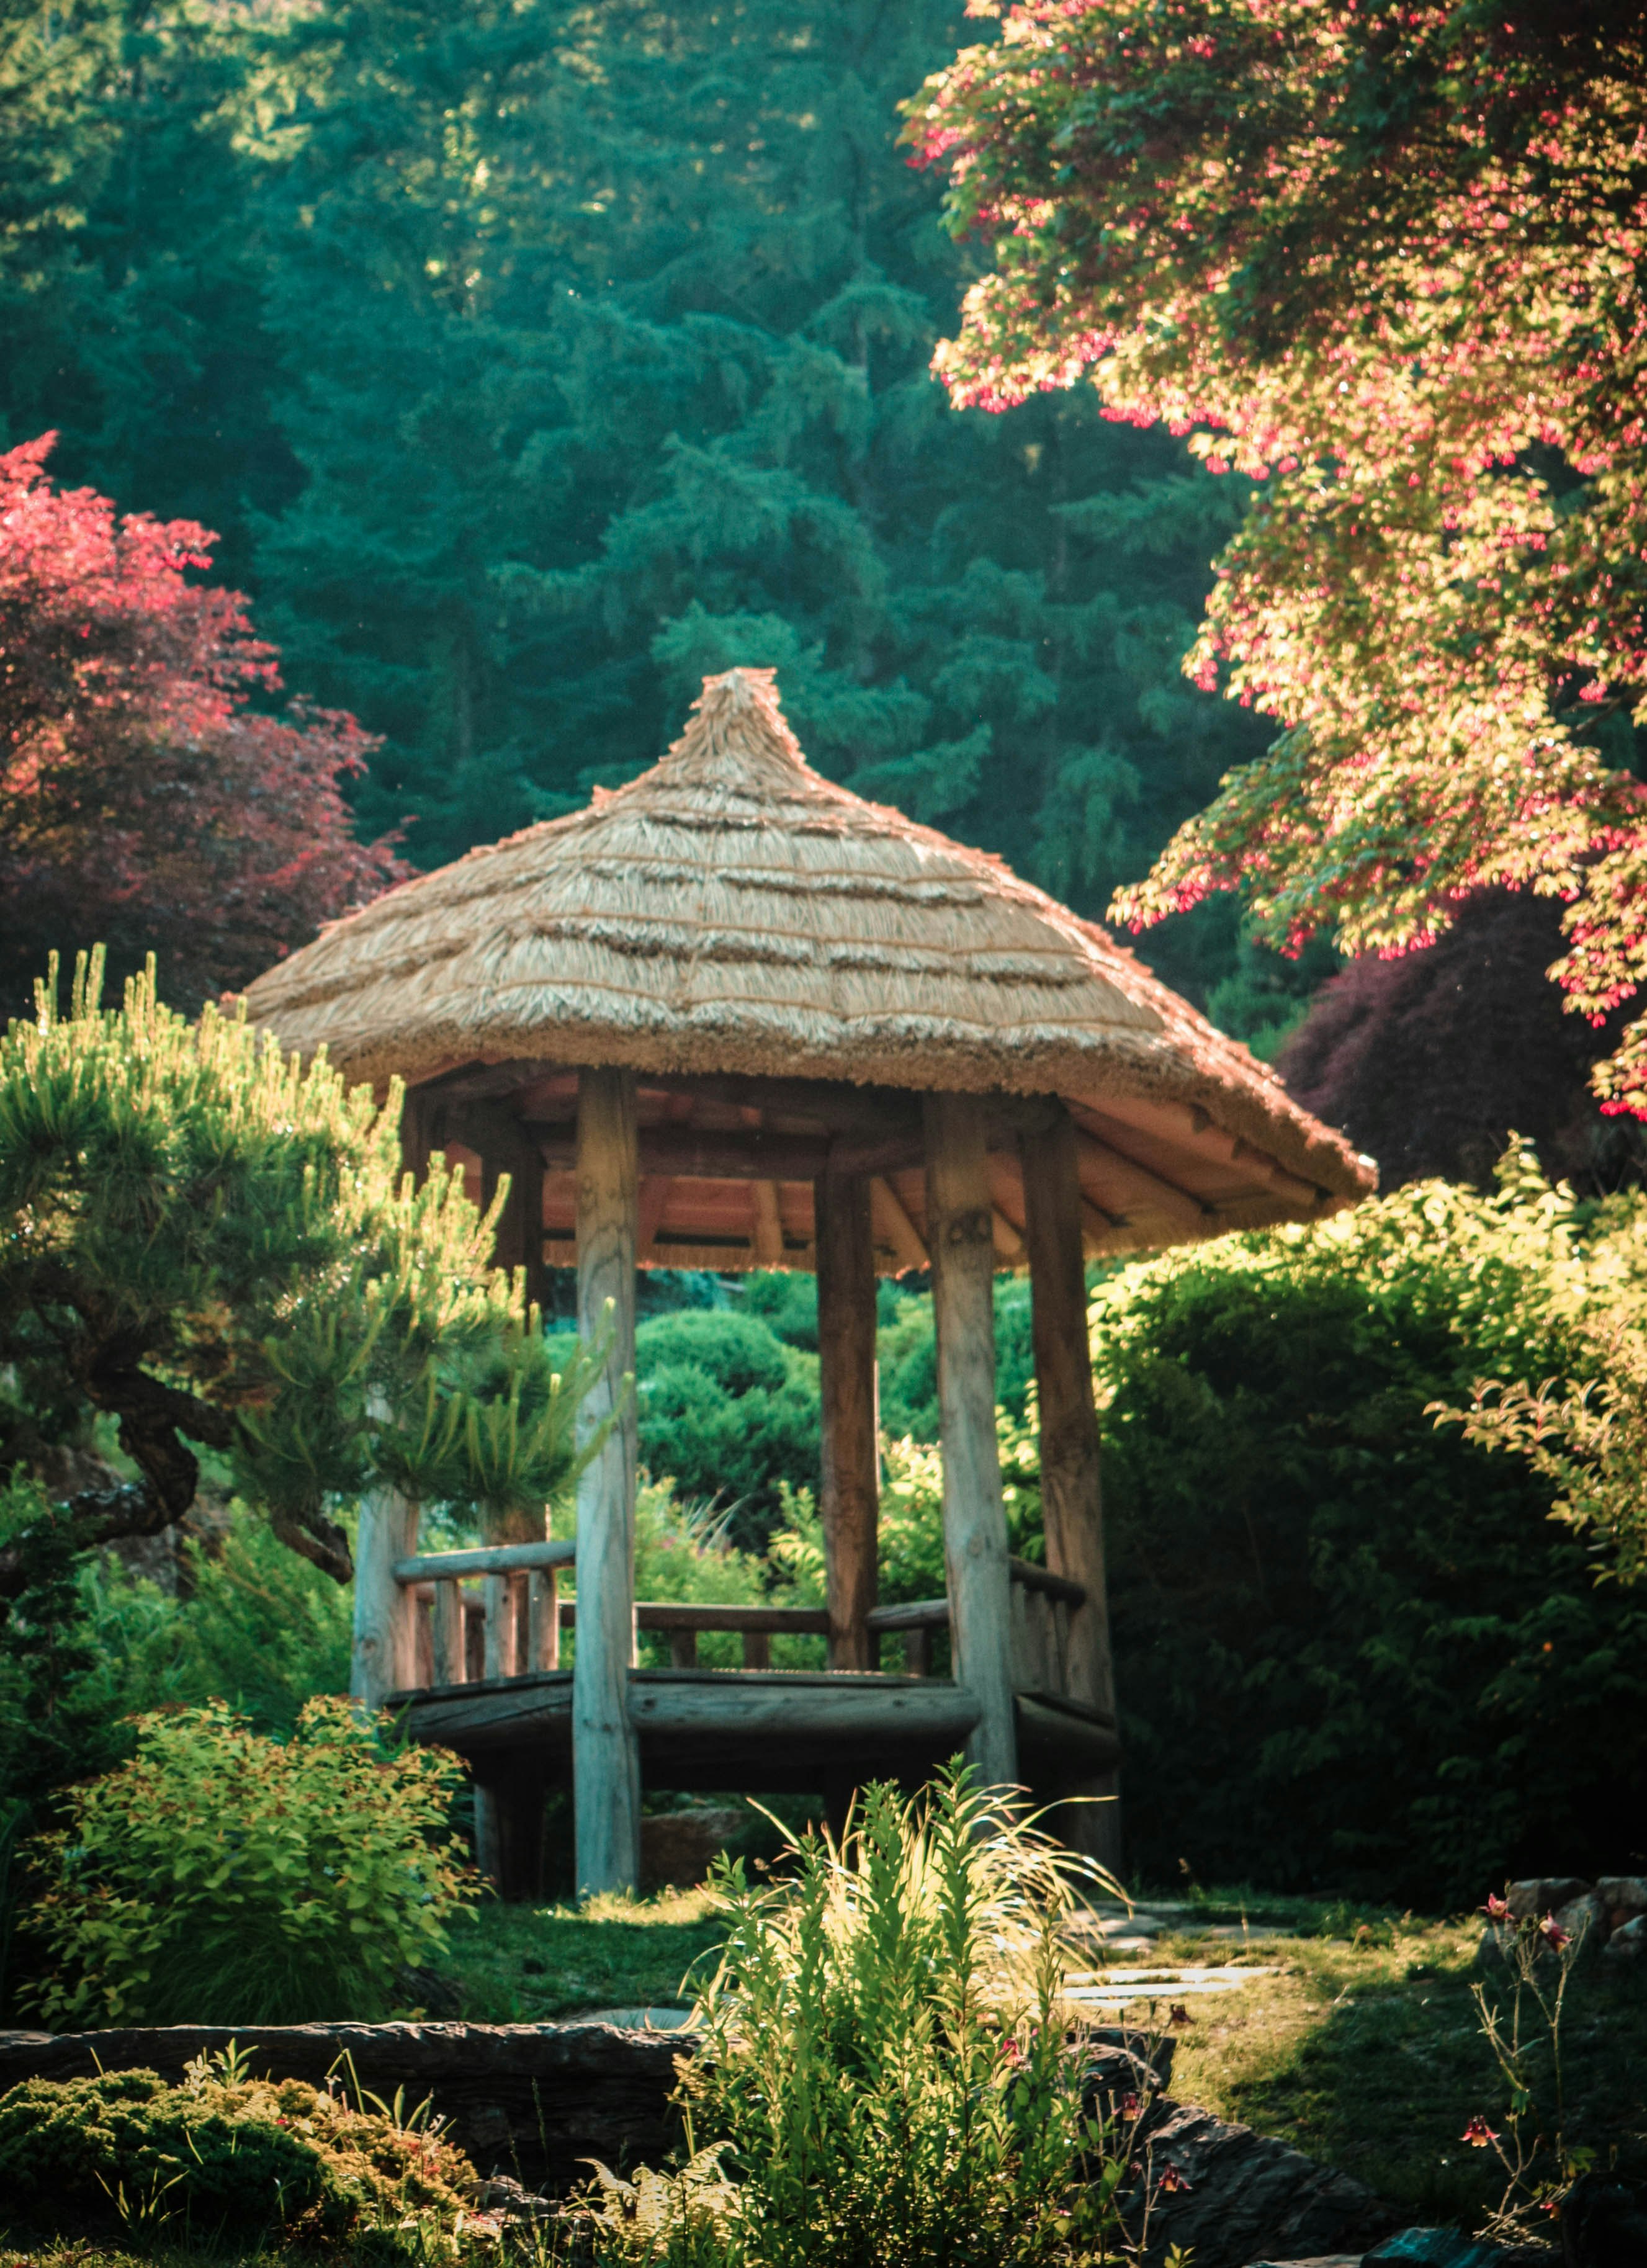 A hut from Korea's Garden of the Morning Calm